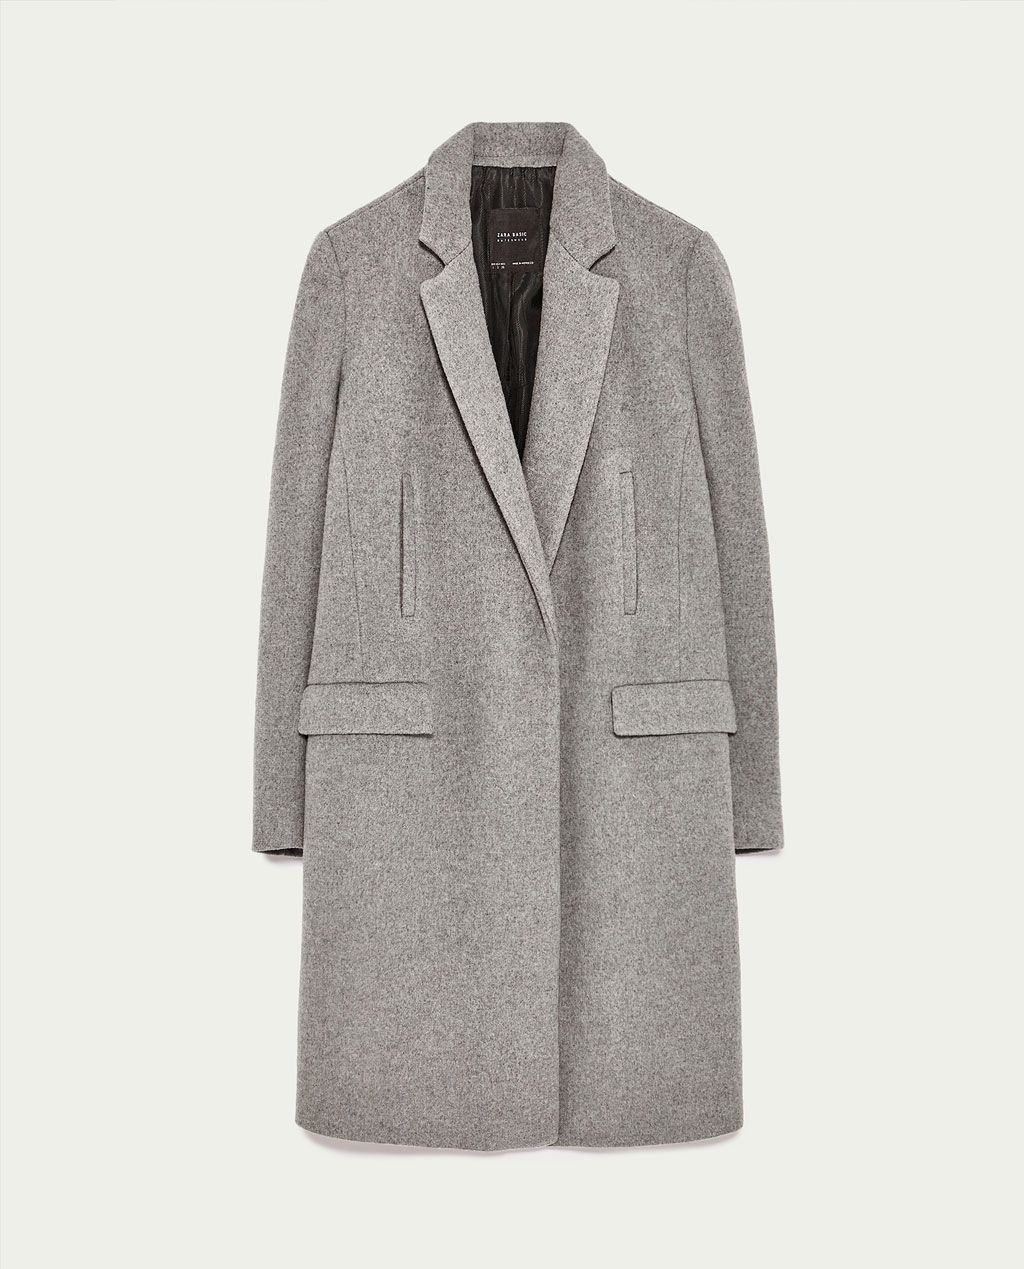 Rebajas Zara: abrigo masculino